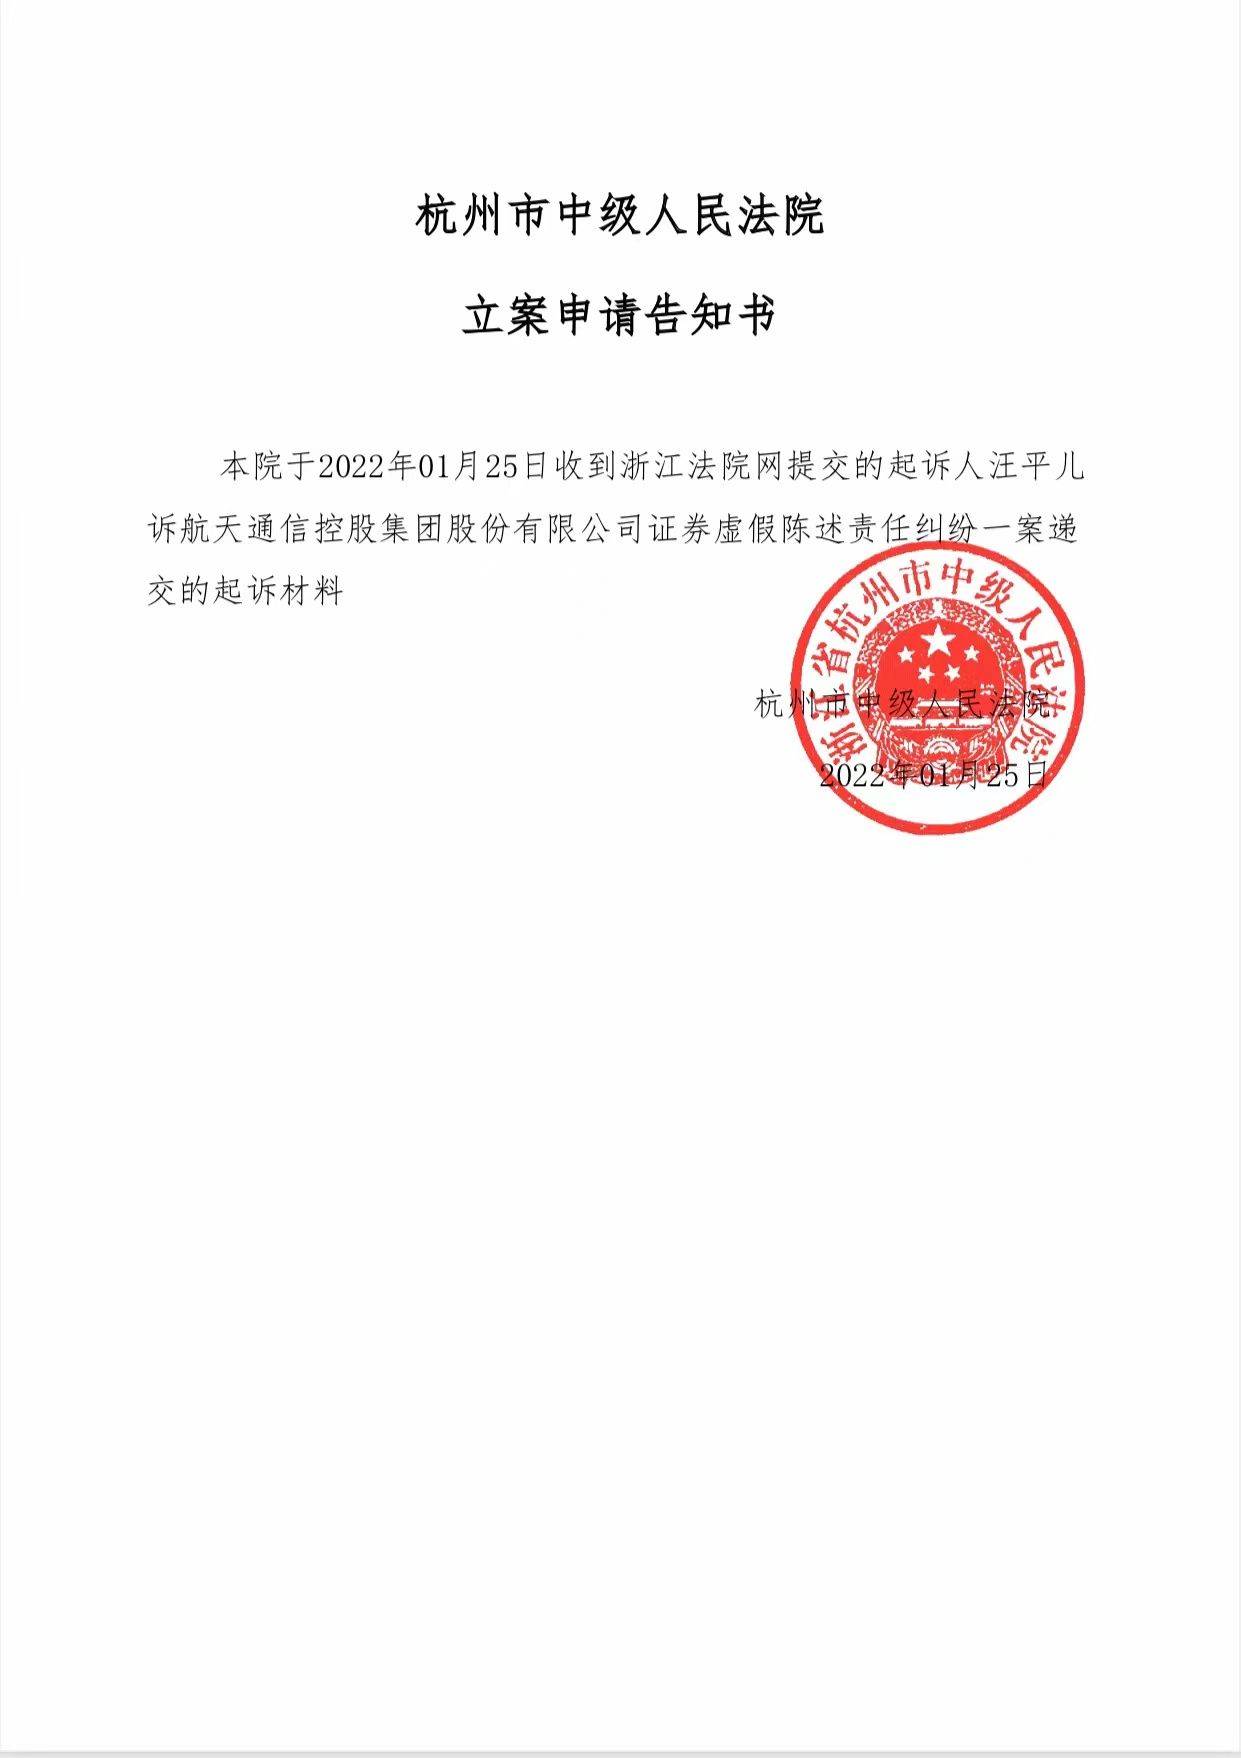 航天通信600677股票索赔案第一批8个案件提交杭州中院立案审查